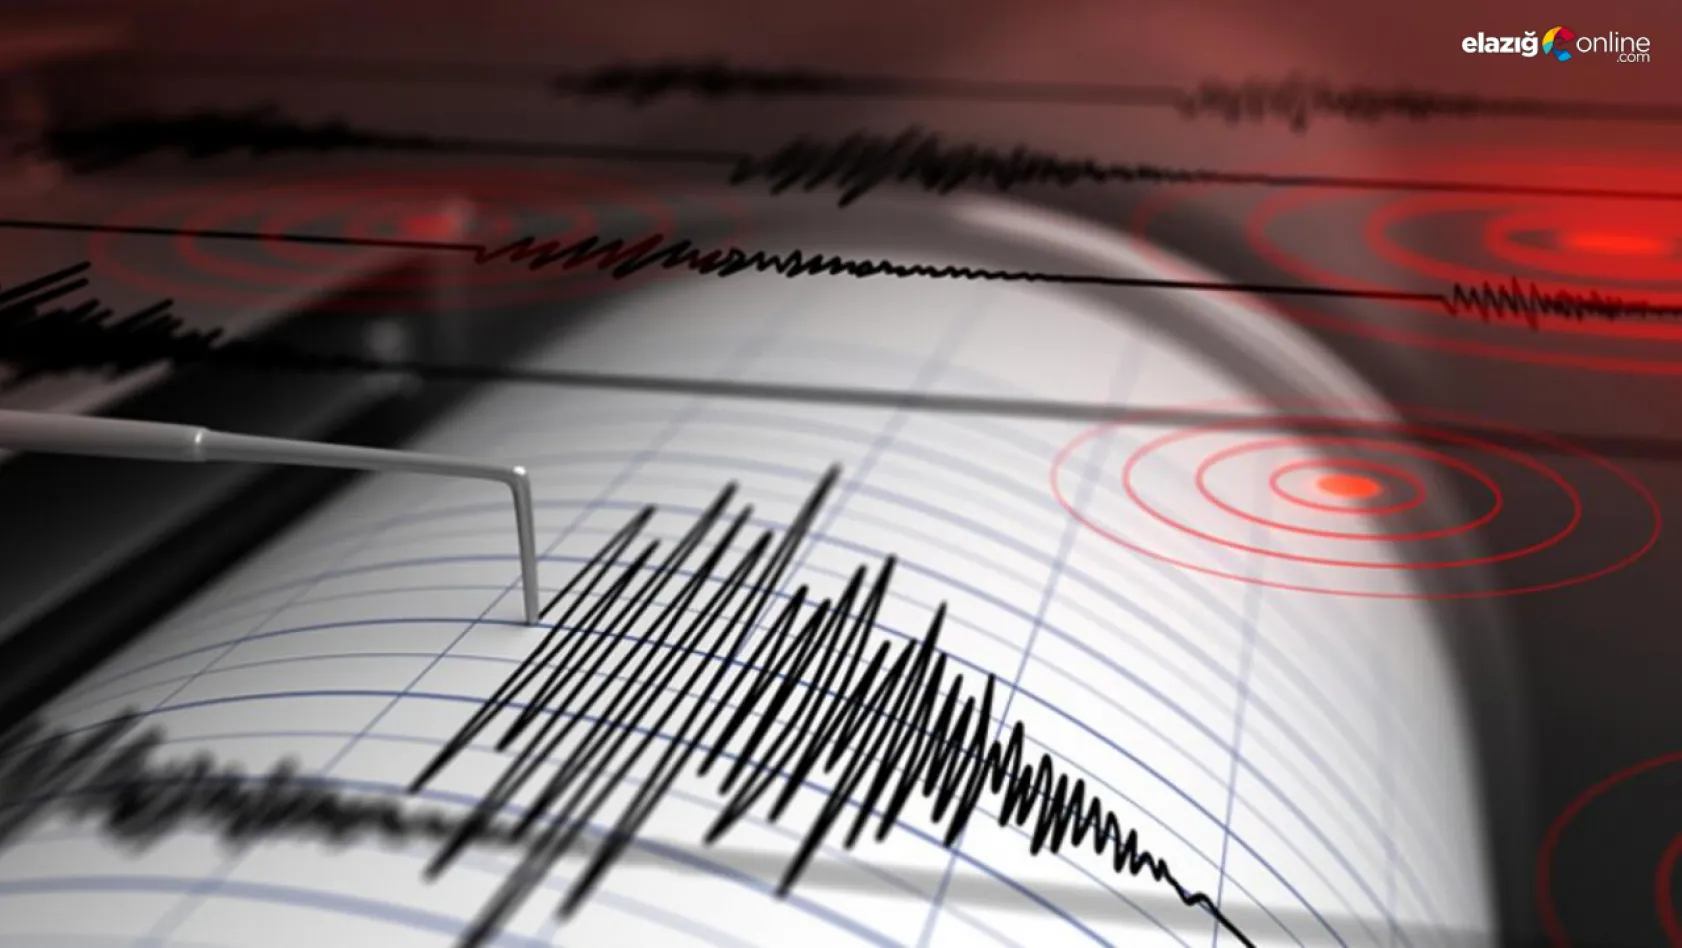 Son dakika haber: Hatay'da 4,8 şiddetinde deprem!